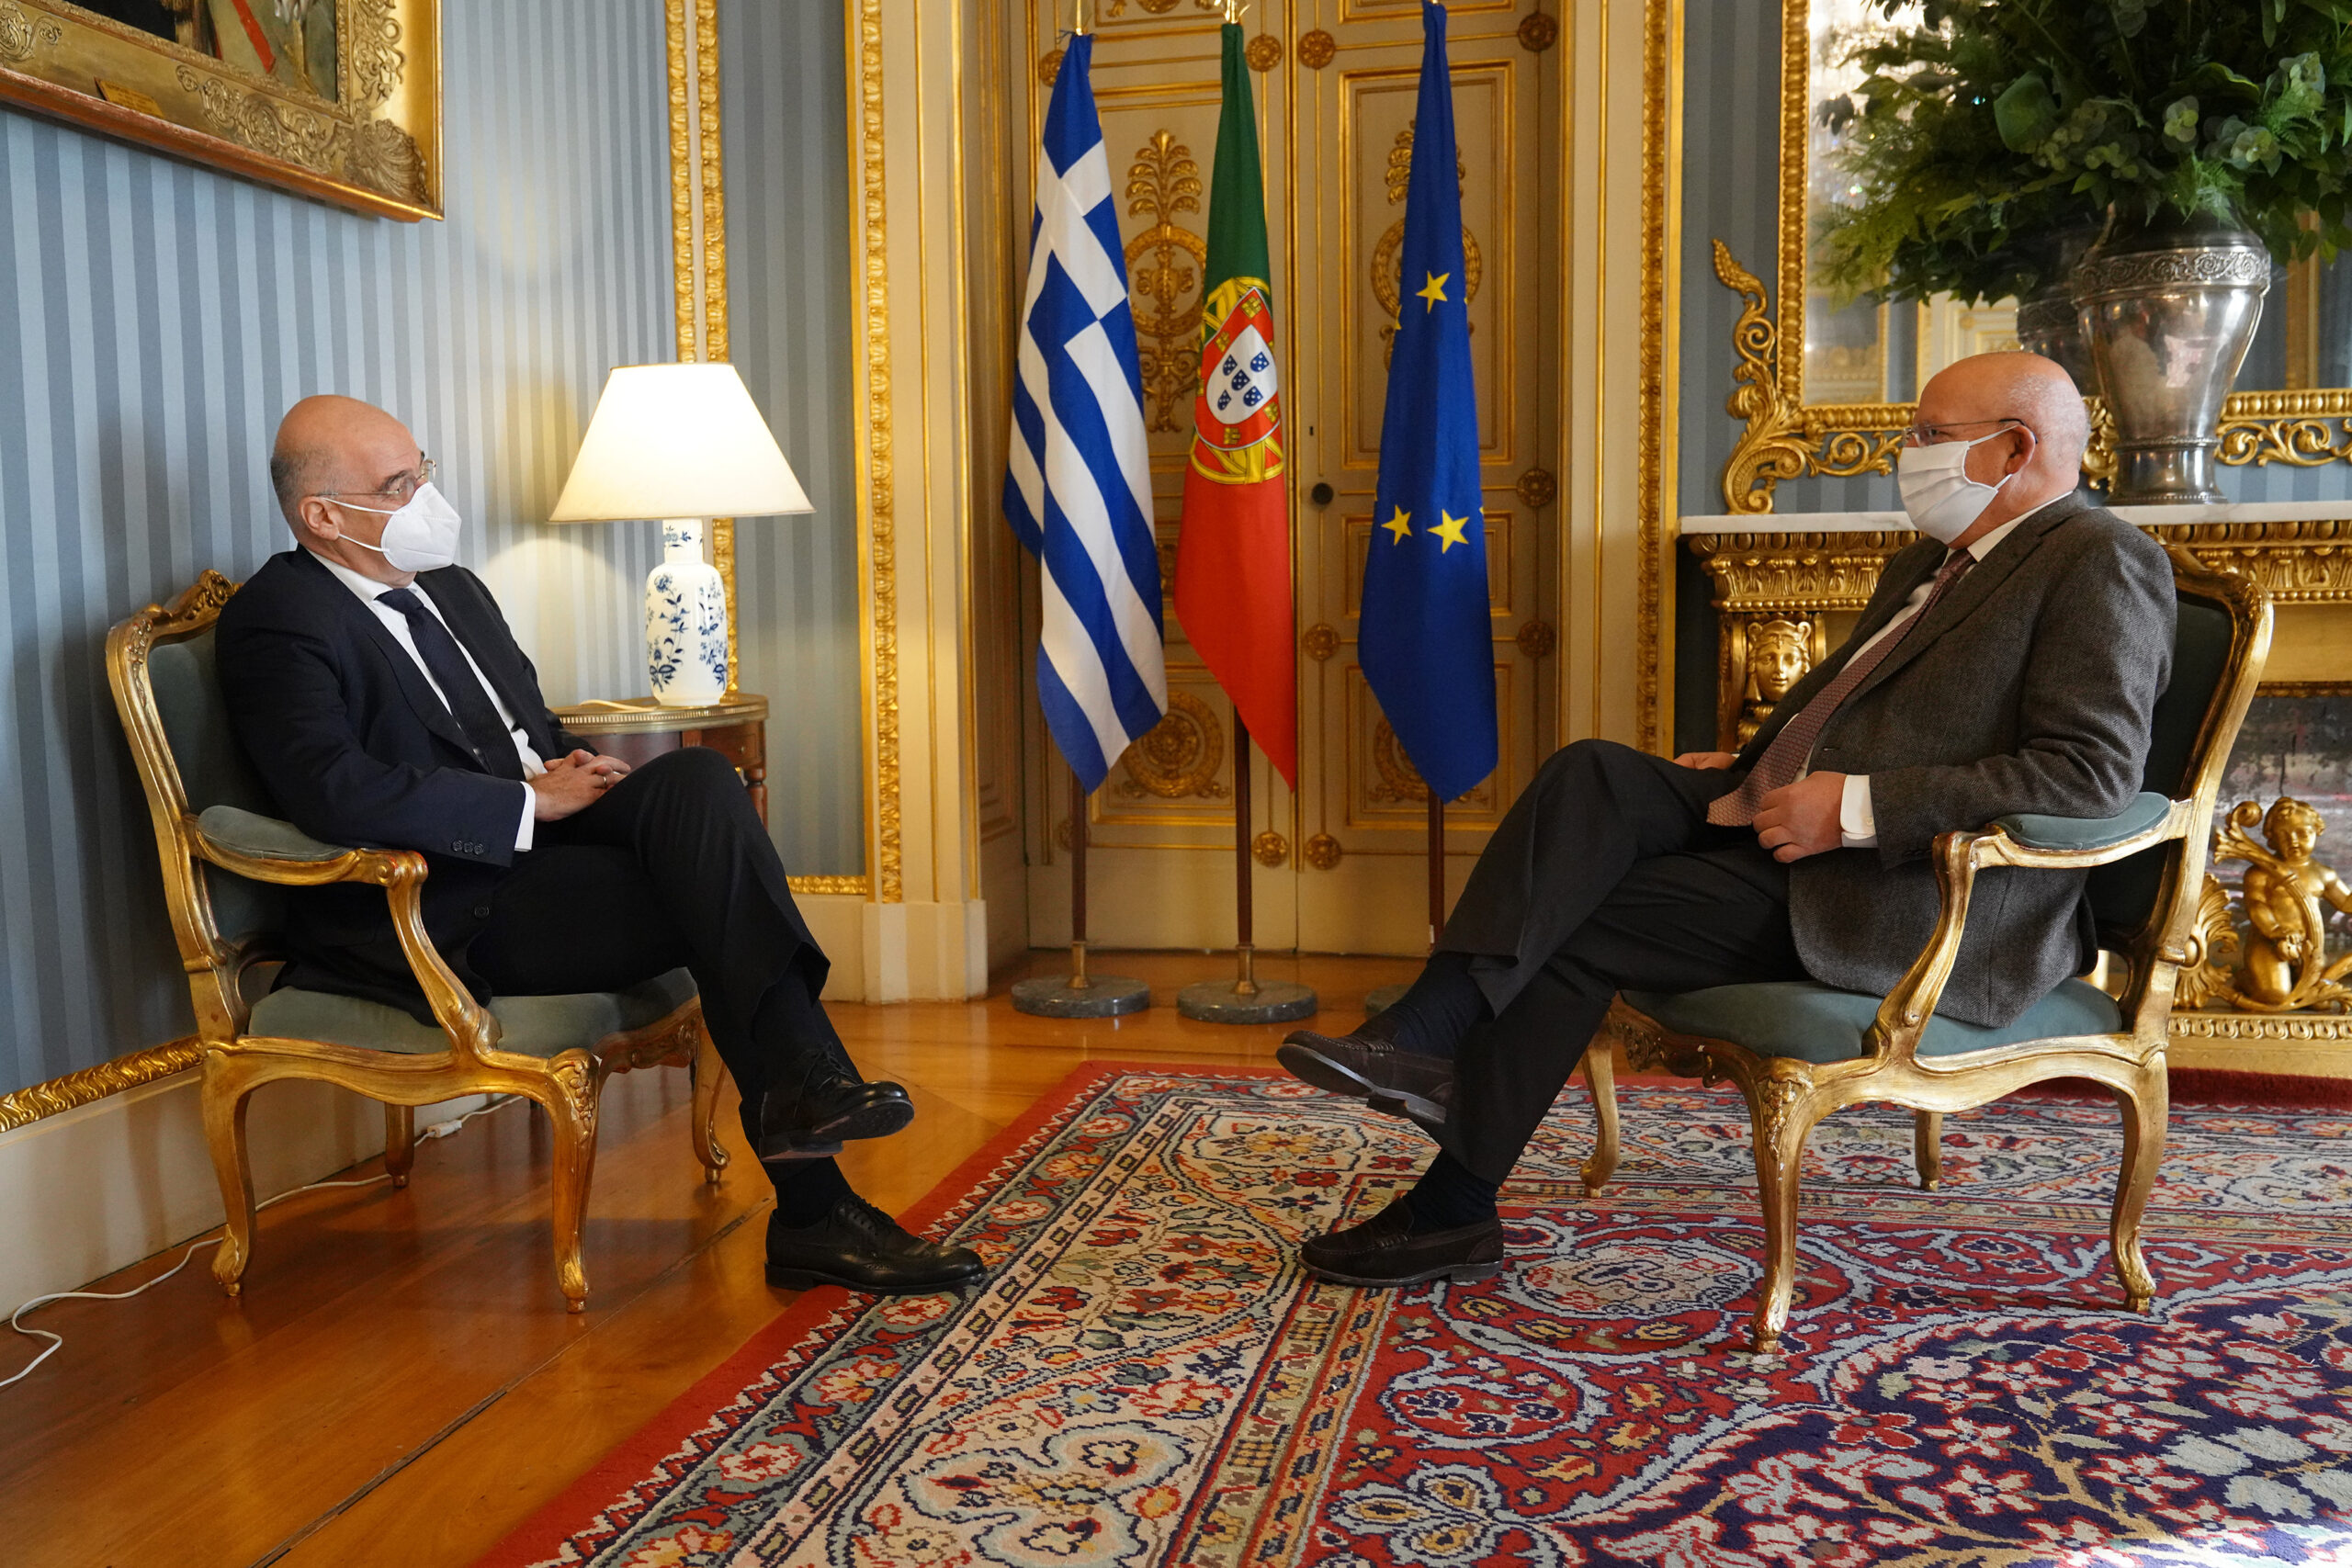 Επίσκεψη Υπουργού Εξωτερικών, Νίκου Δένδια, στην Ιταλία και στην Πορτογαλία. Στην Λισσαβώνα, ο κ. Δένδιας συνάντησε τον Πορτογάλο ομόλογό του, κ. Augusto Santos Silva,  (Λισσαβώνα,  13.01.2021)